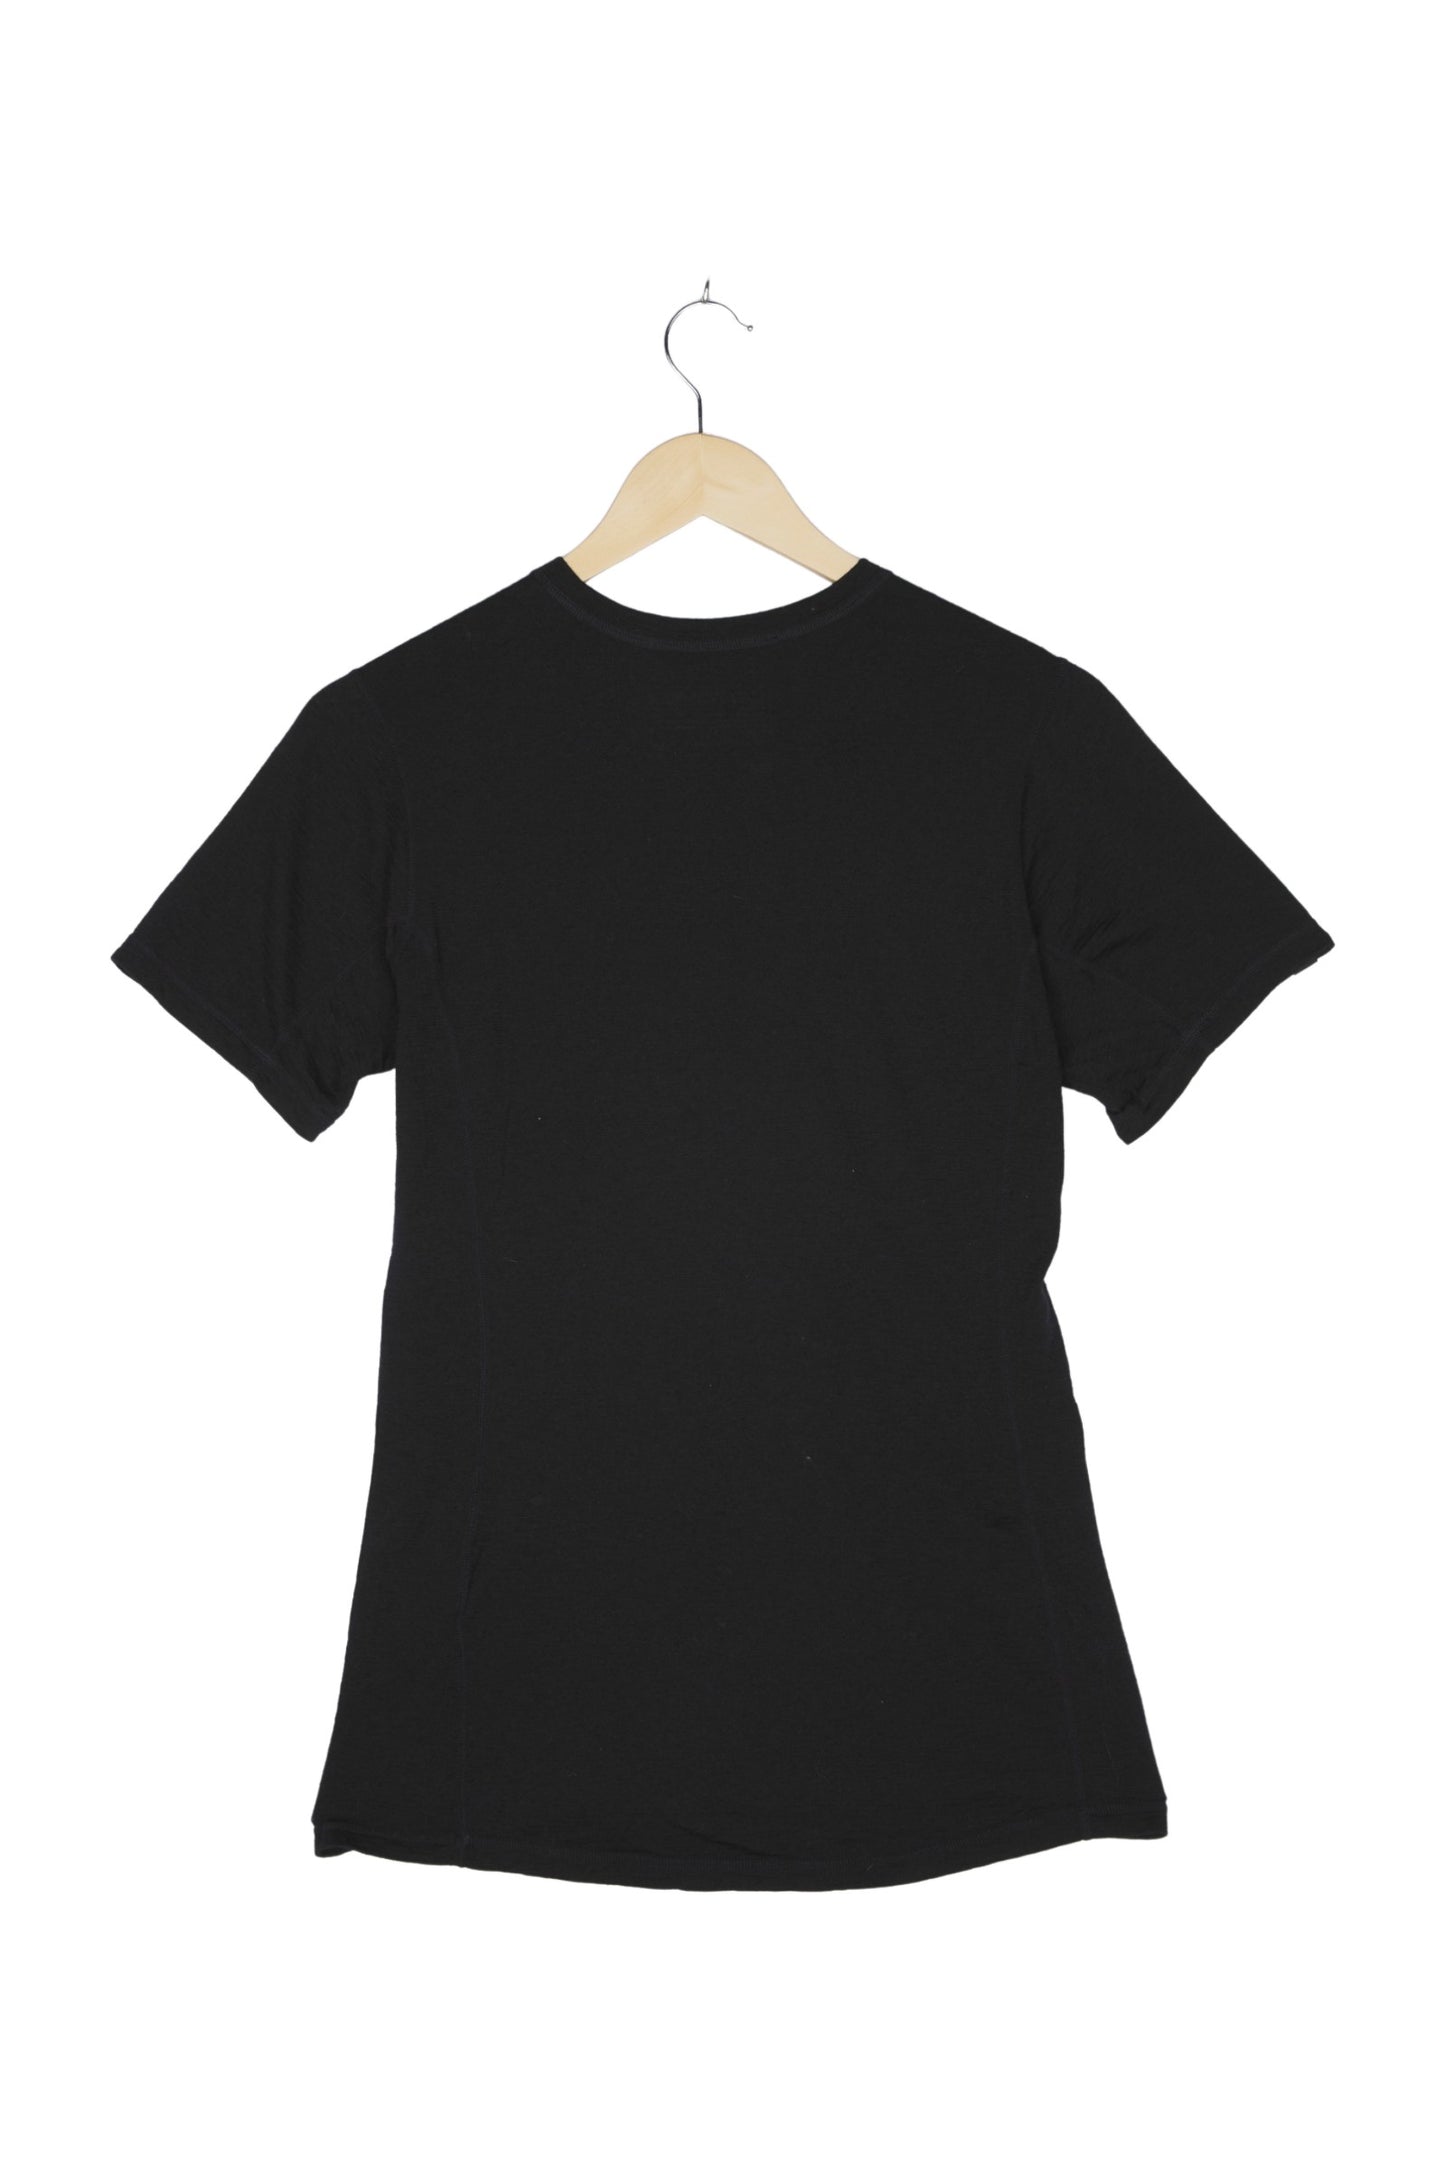 Ortovox T-Shirt Merino für Damen